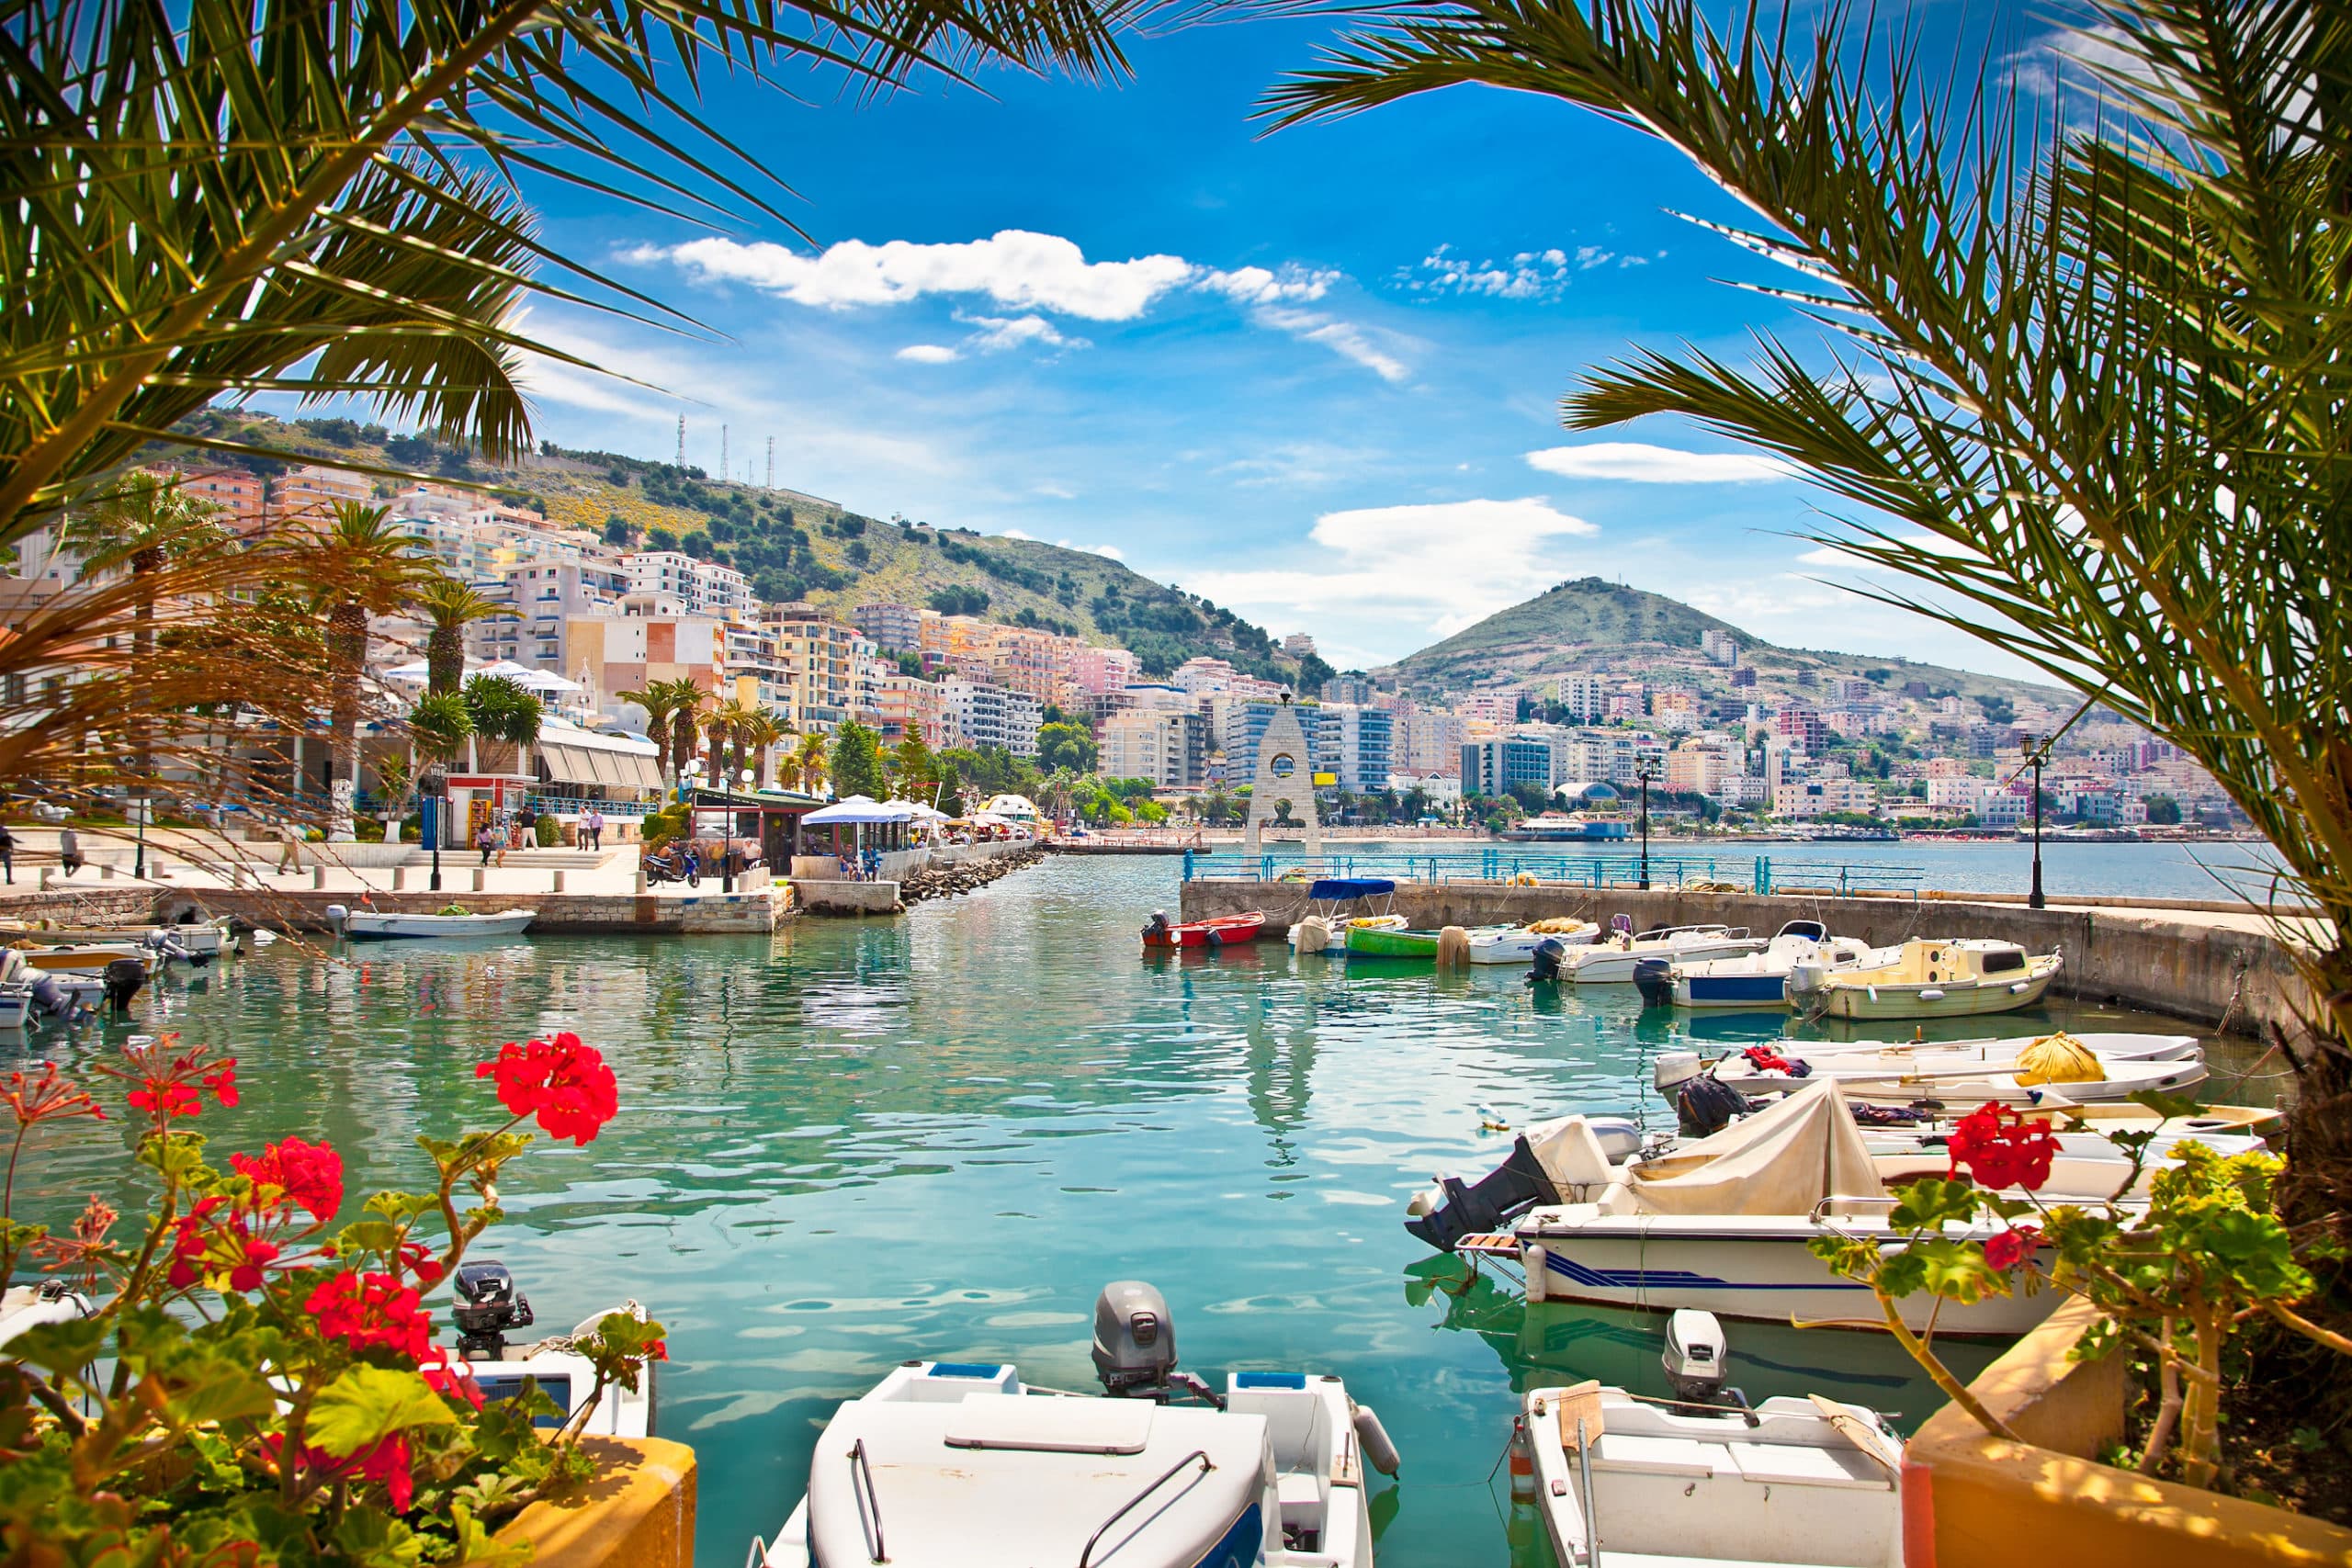  kleine bootjes die in de haven van Sarande in Albanië liggen. Op de voorgrond zie je rode bloemen en palmen en op de achtergrond de boulevard met hoogbouw en daarachter de bergen.